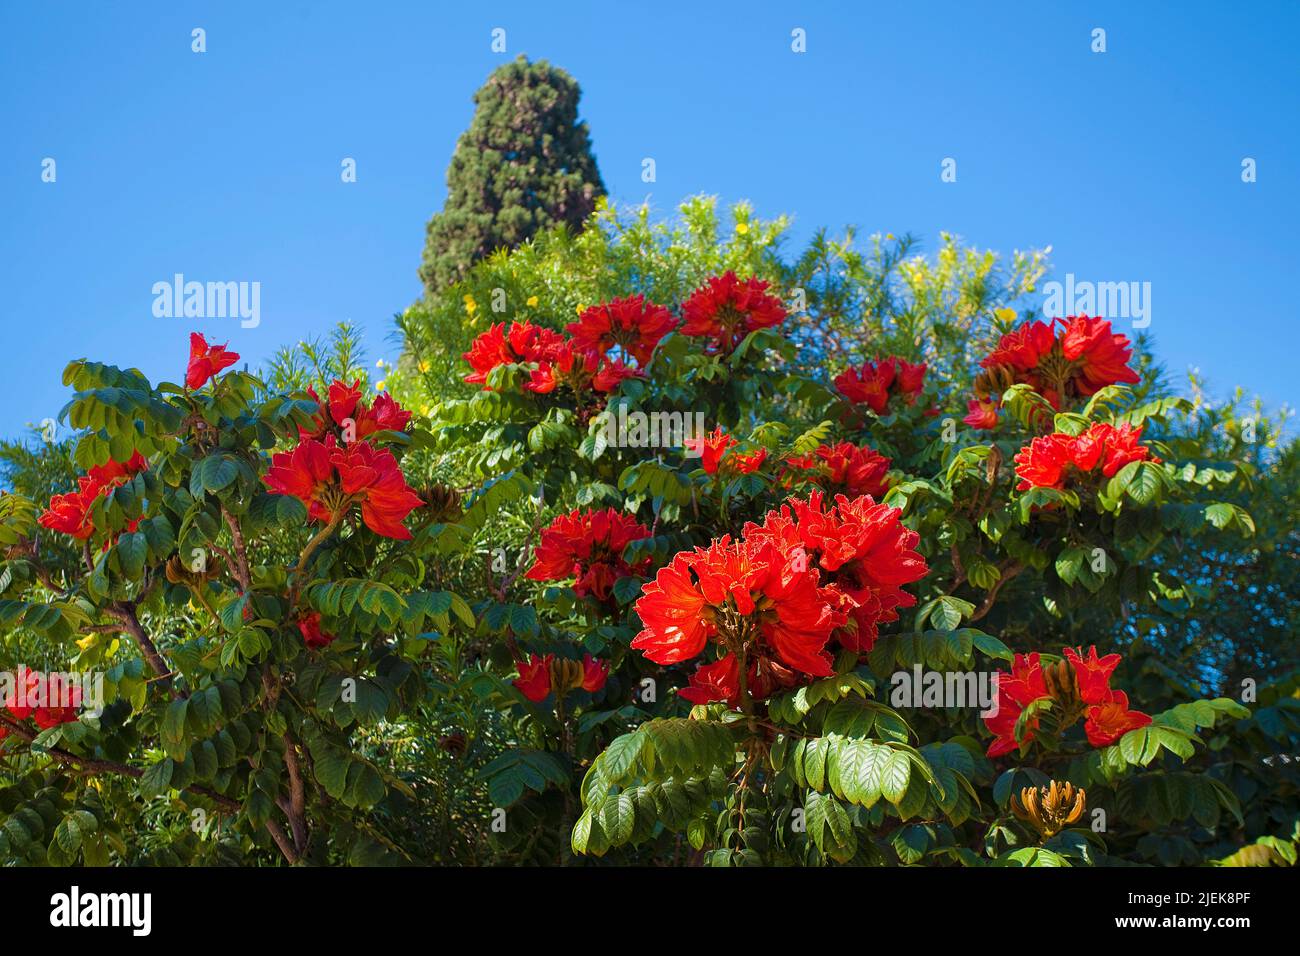 Fleurs d'un flamboyant, arbre de flamme (Delonix regia), Porto Rico, Grand Canary, îles Canaries, Espagne, Europe Banque D'Images